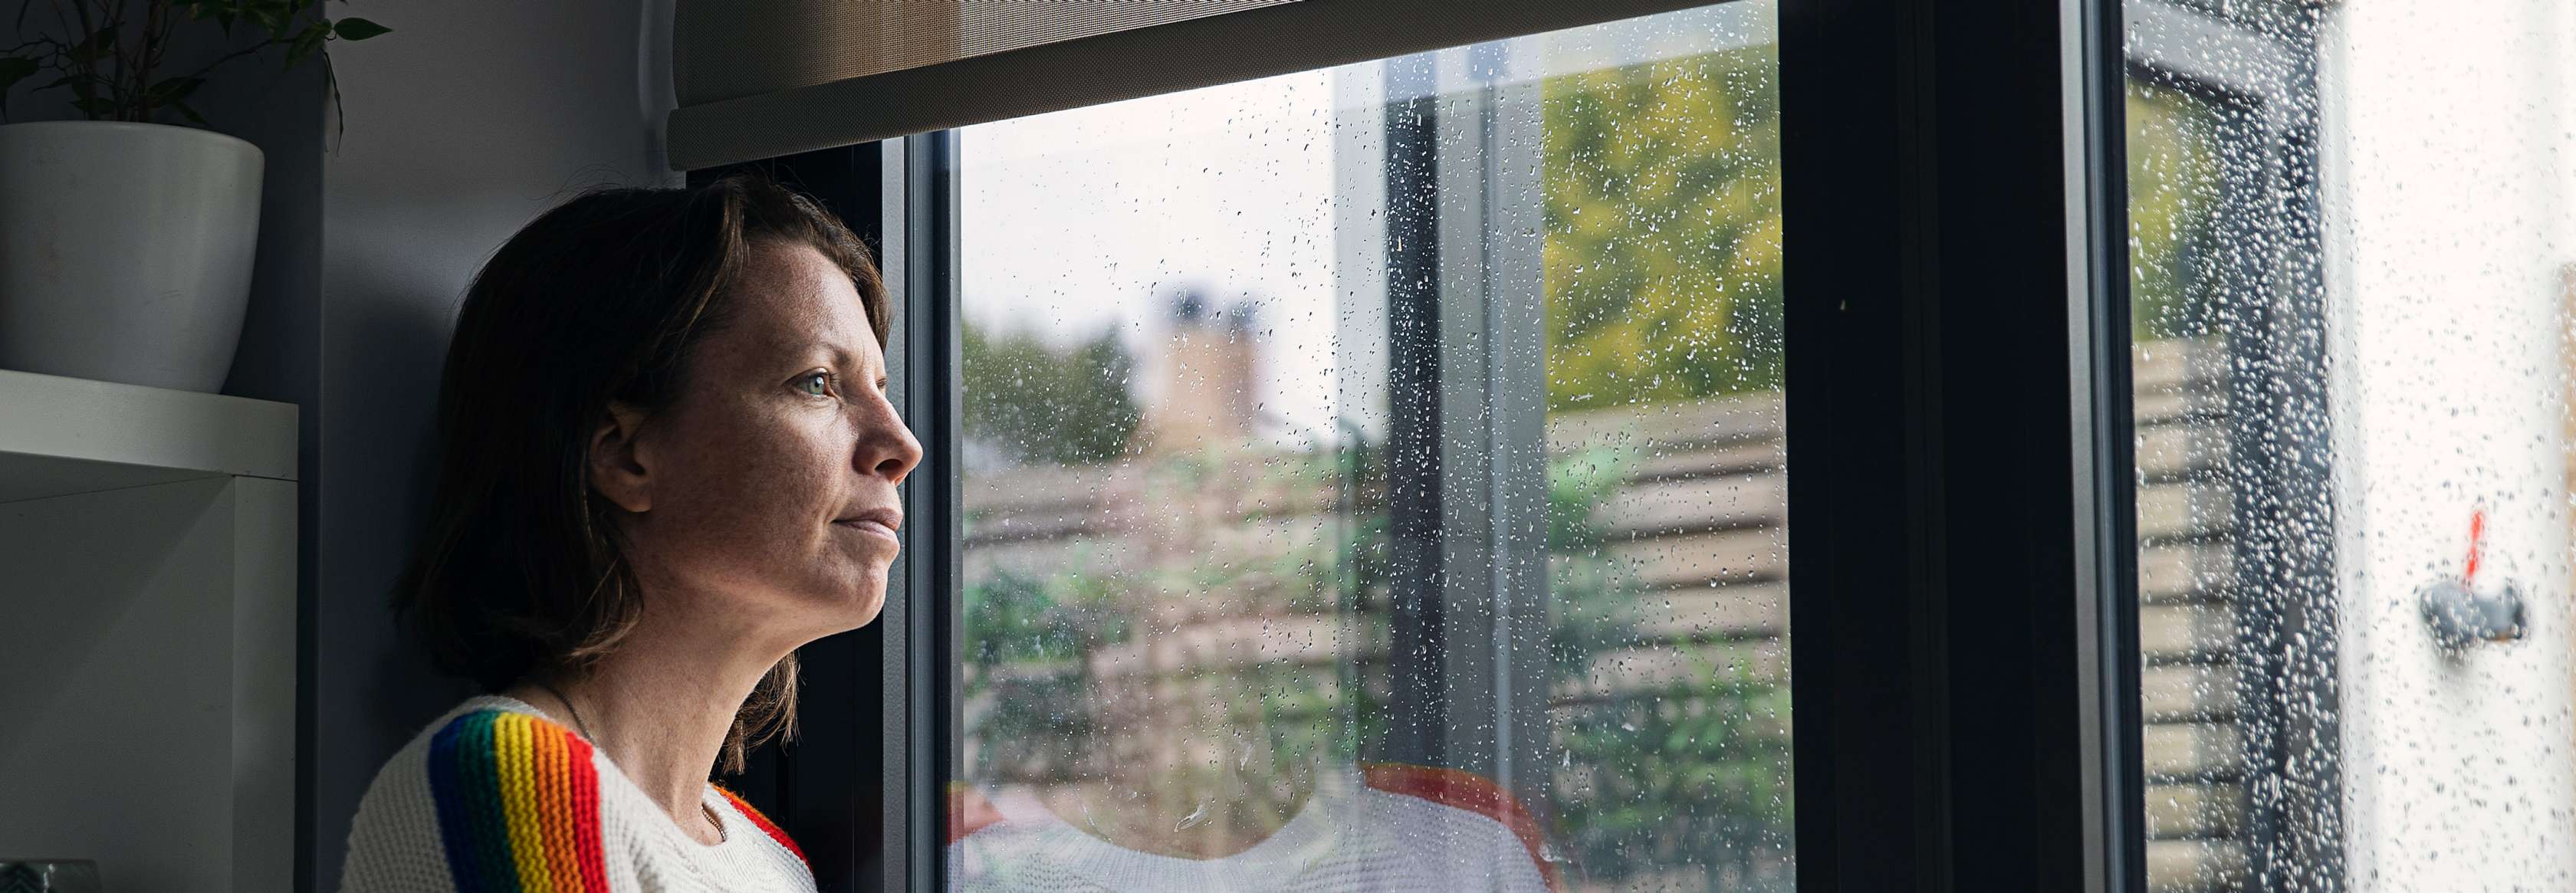 Eine Frau schaut sich ein Unwetter durch ein verregnetes Fenster an